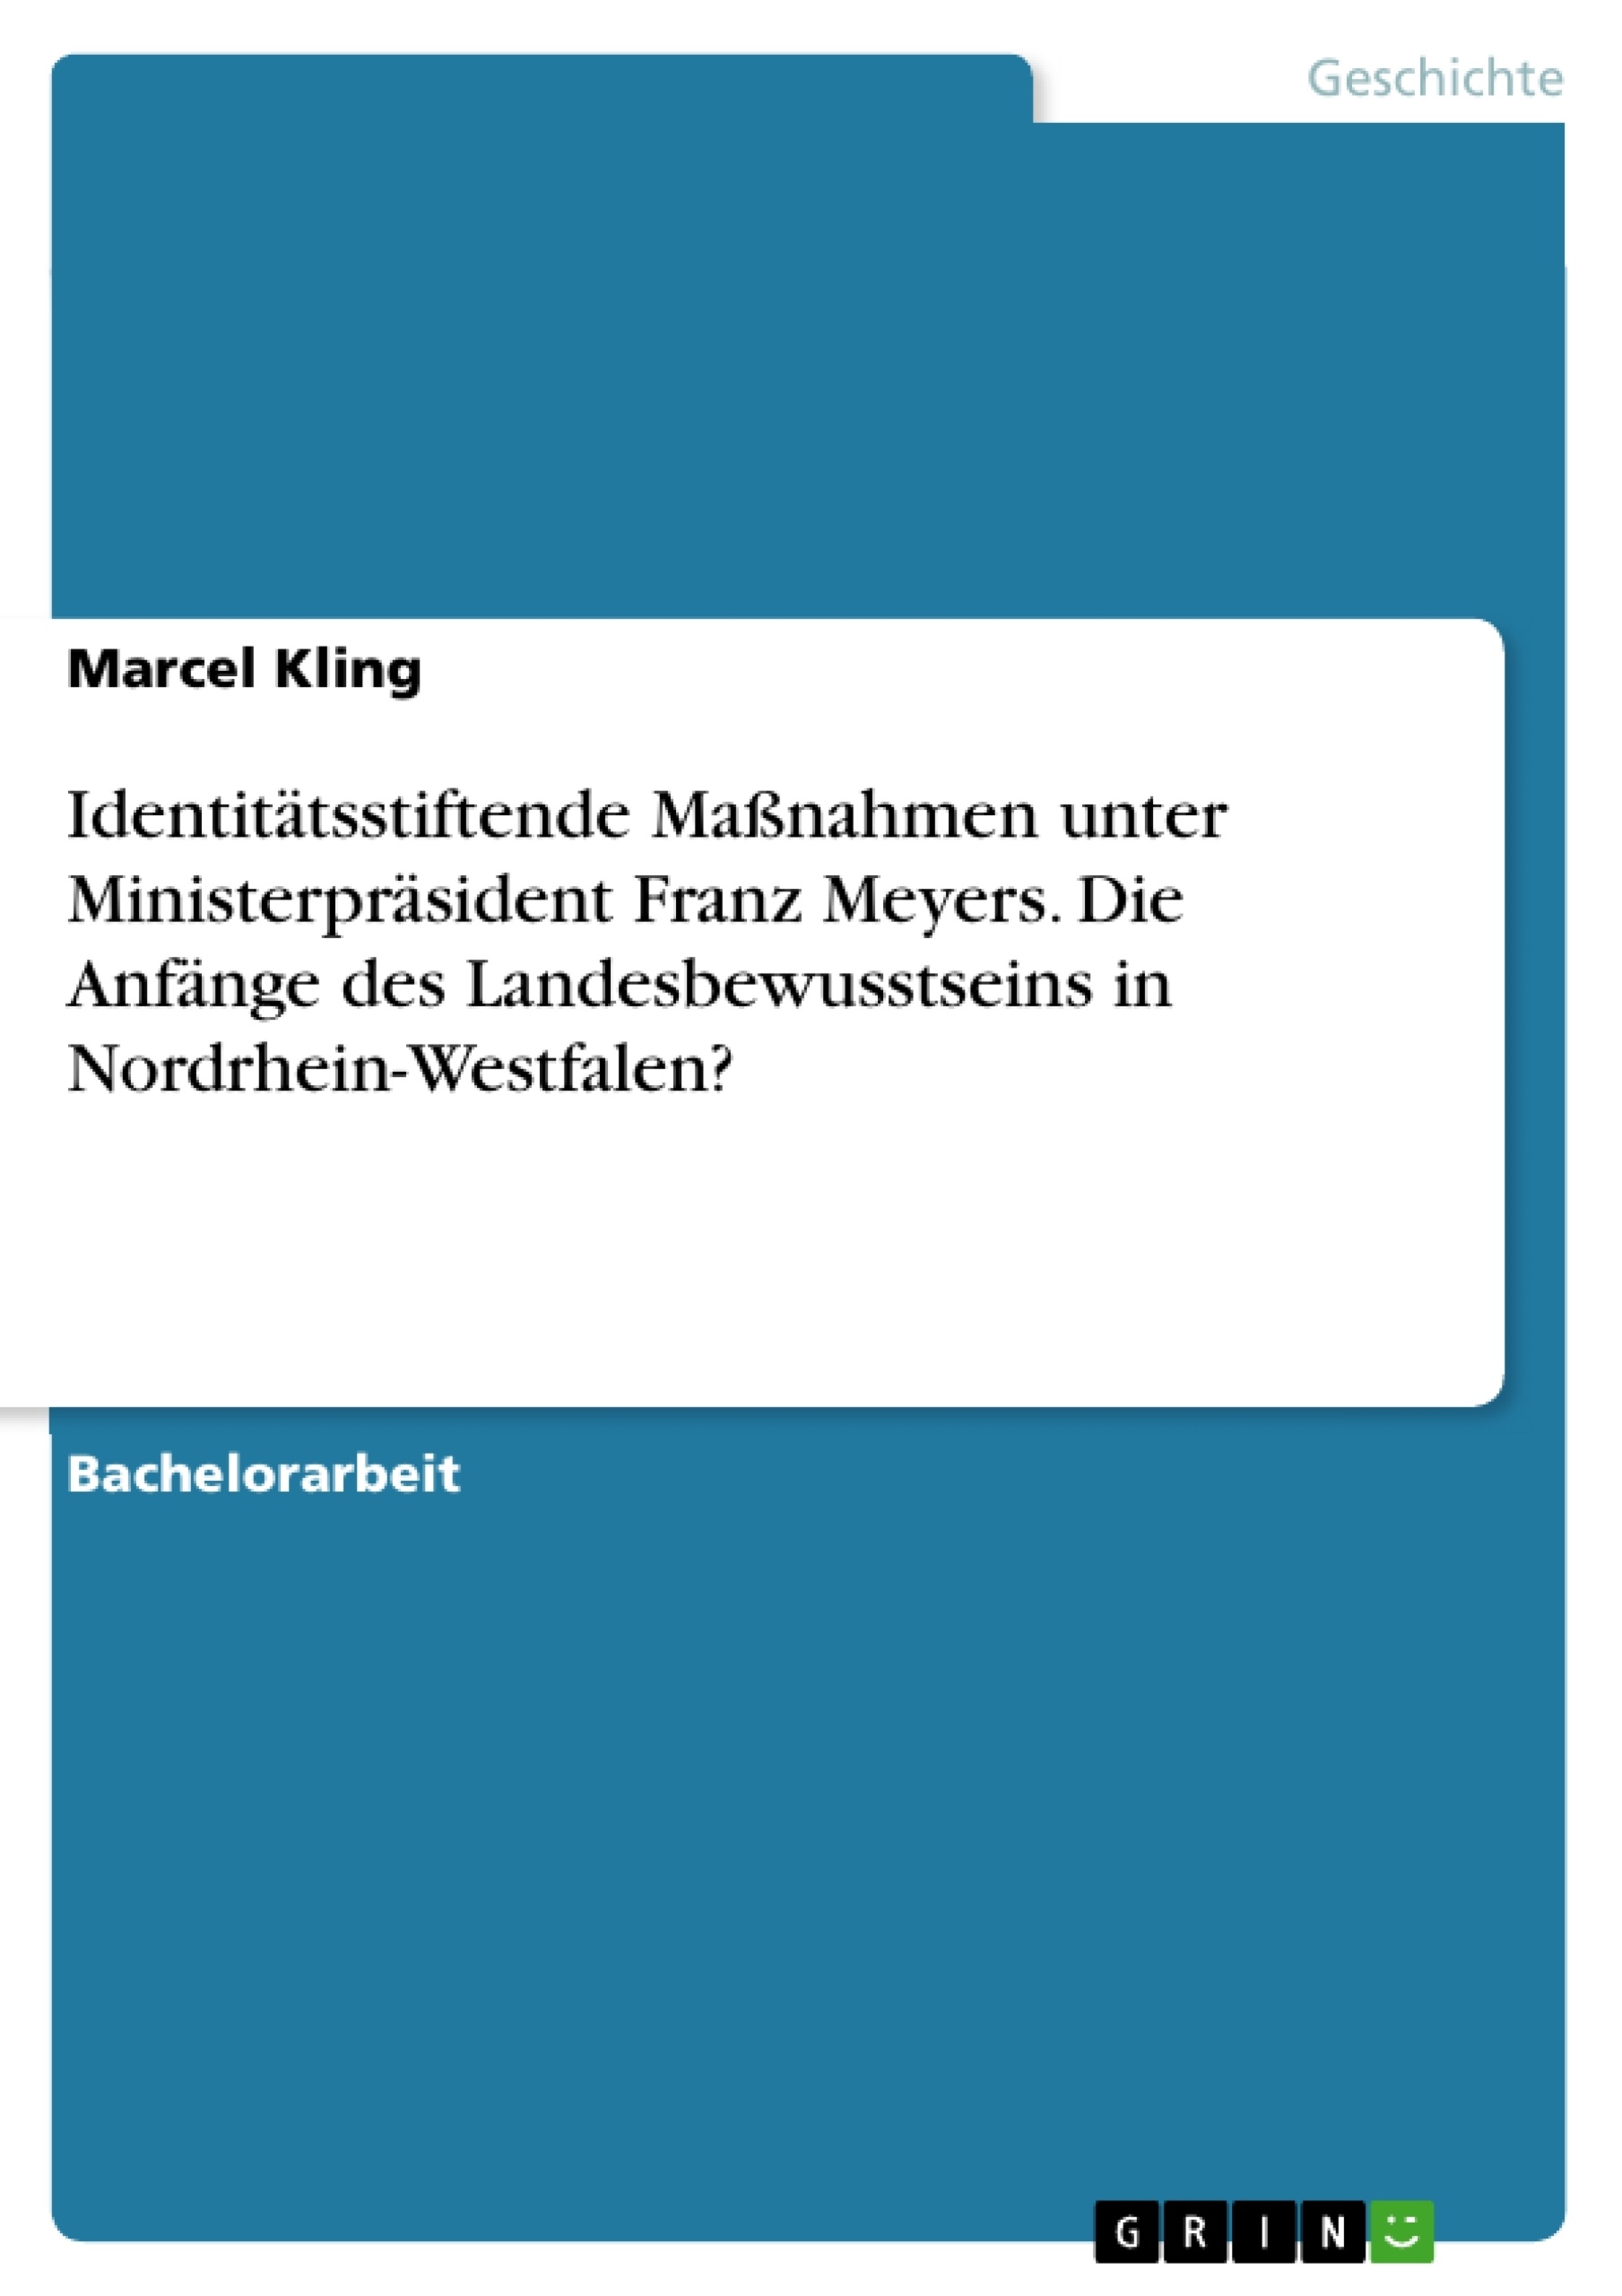 Title: Identitätsstiftende Maßnahmen unter Ministerpräsident Franz Meyers. Die Anfänge des Landesbewusstseins in Nordrhein-Westfalen?